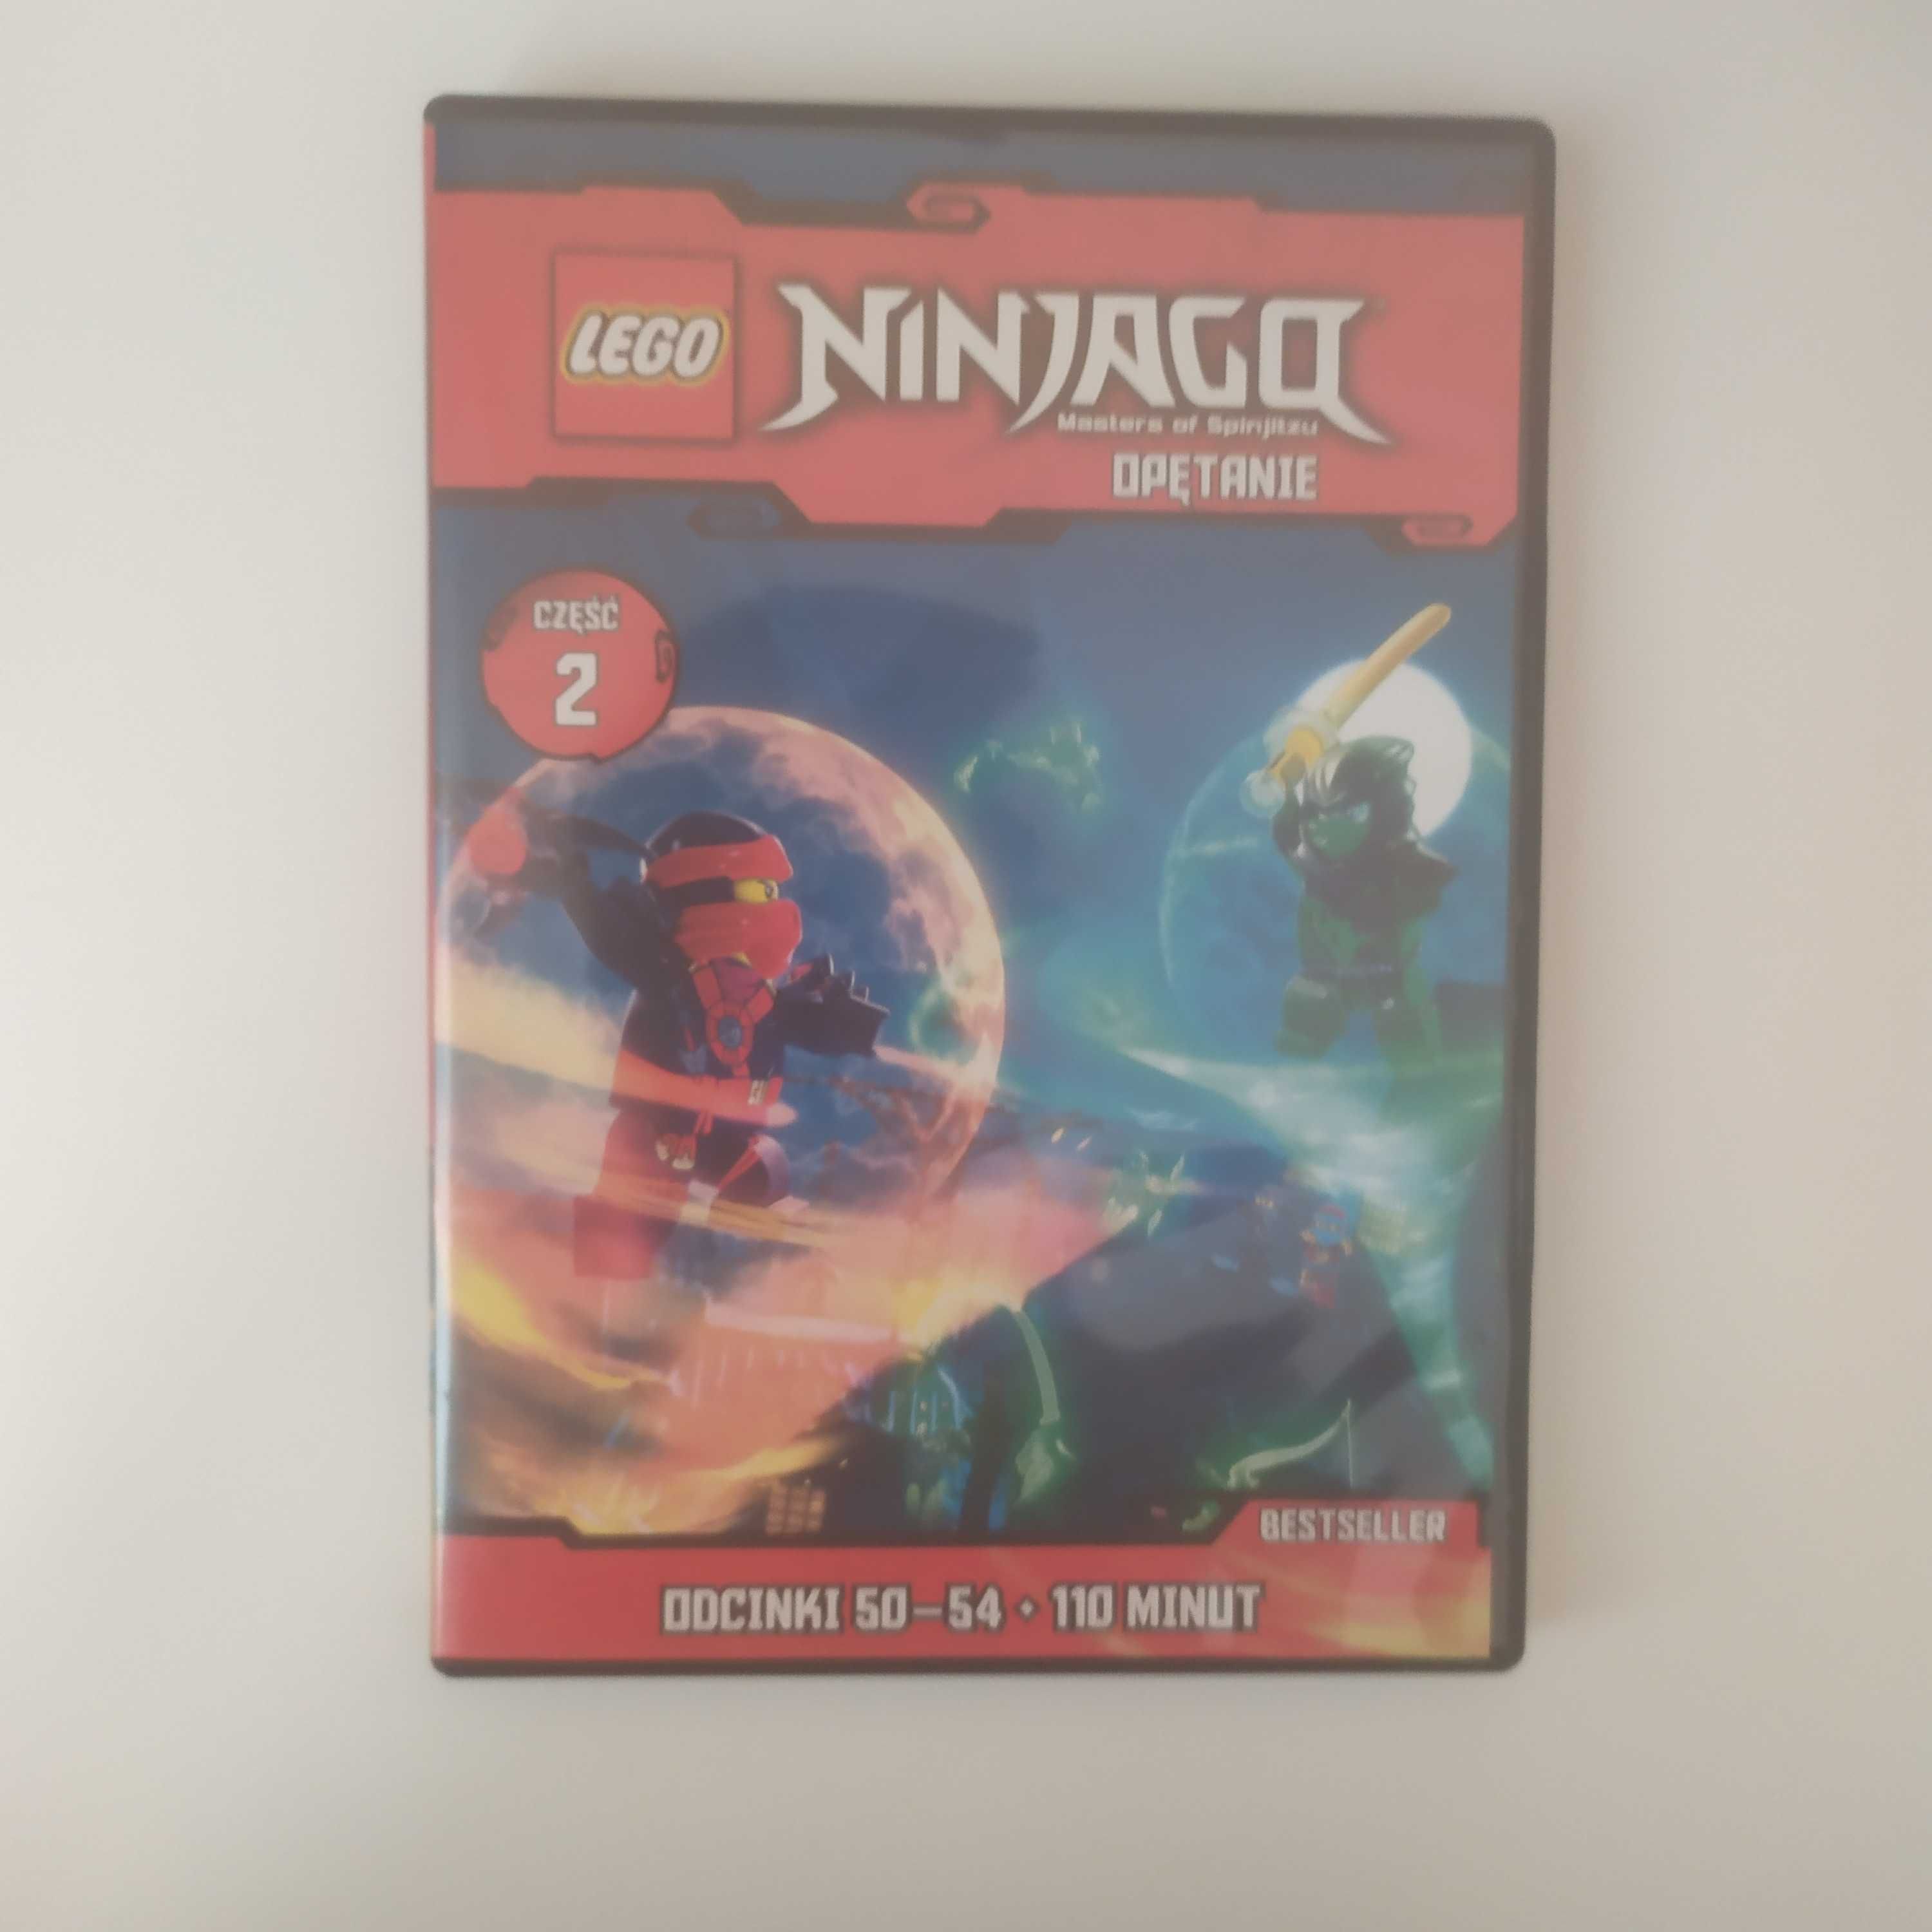 Płyta DVD film LEGO NINJAGO - opętanie część 2 polski dubbing